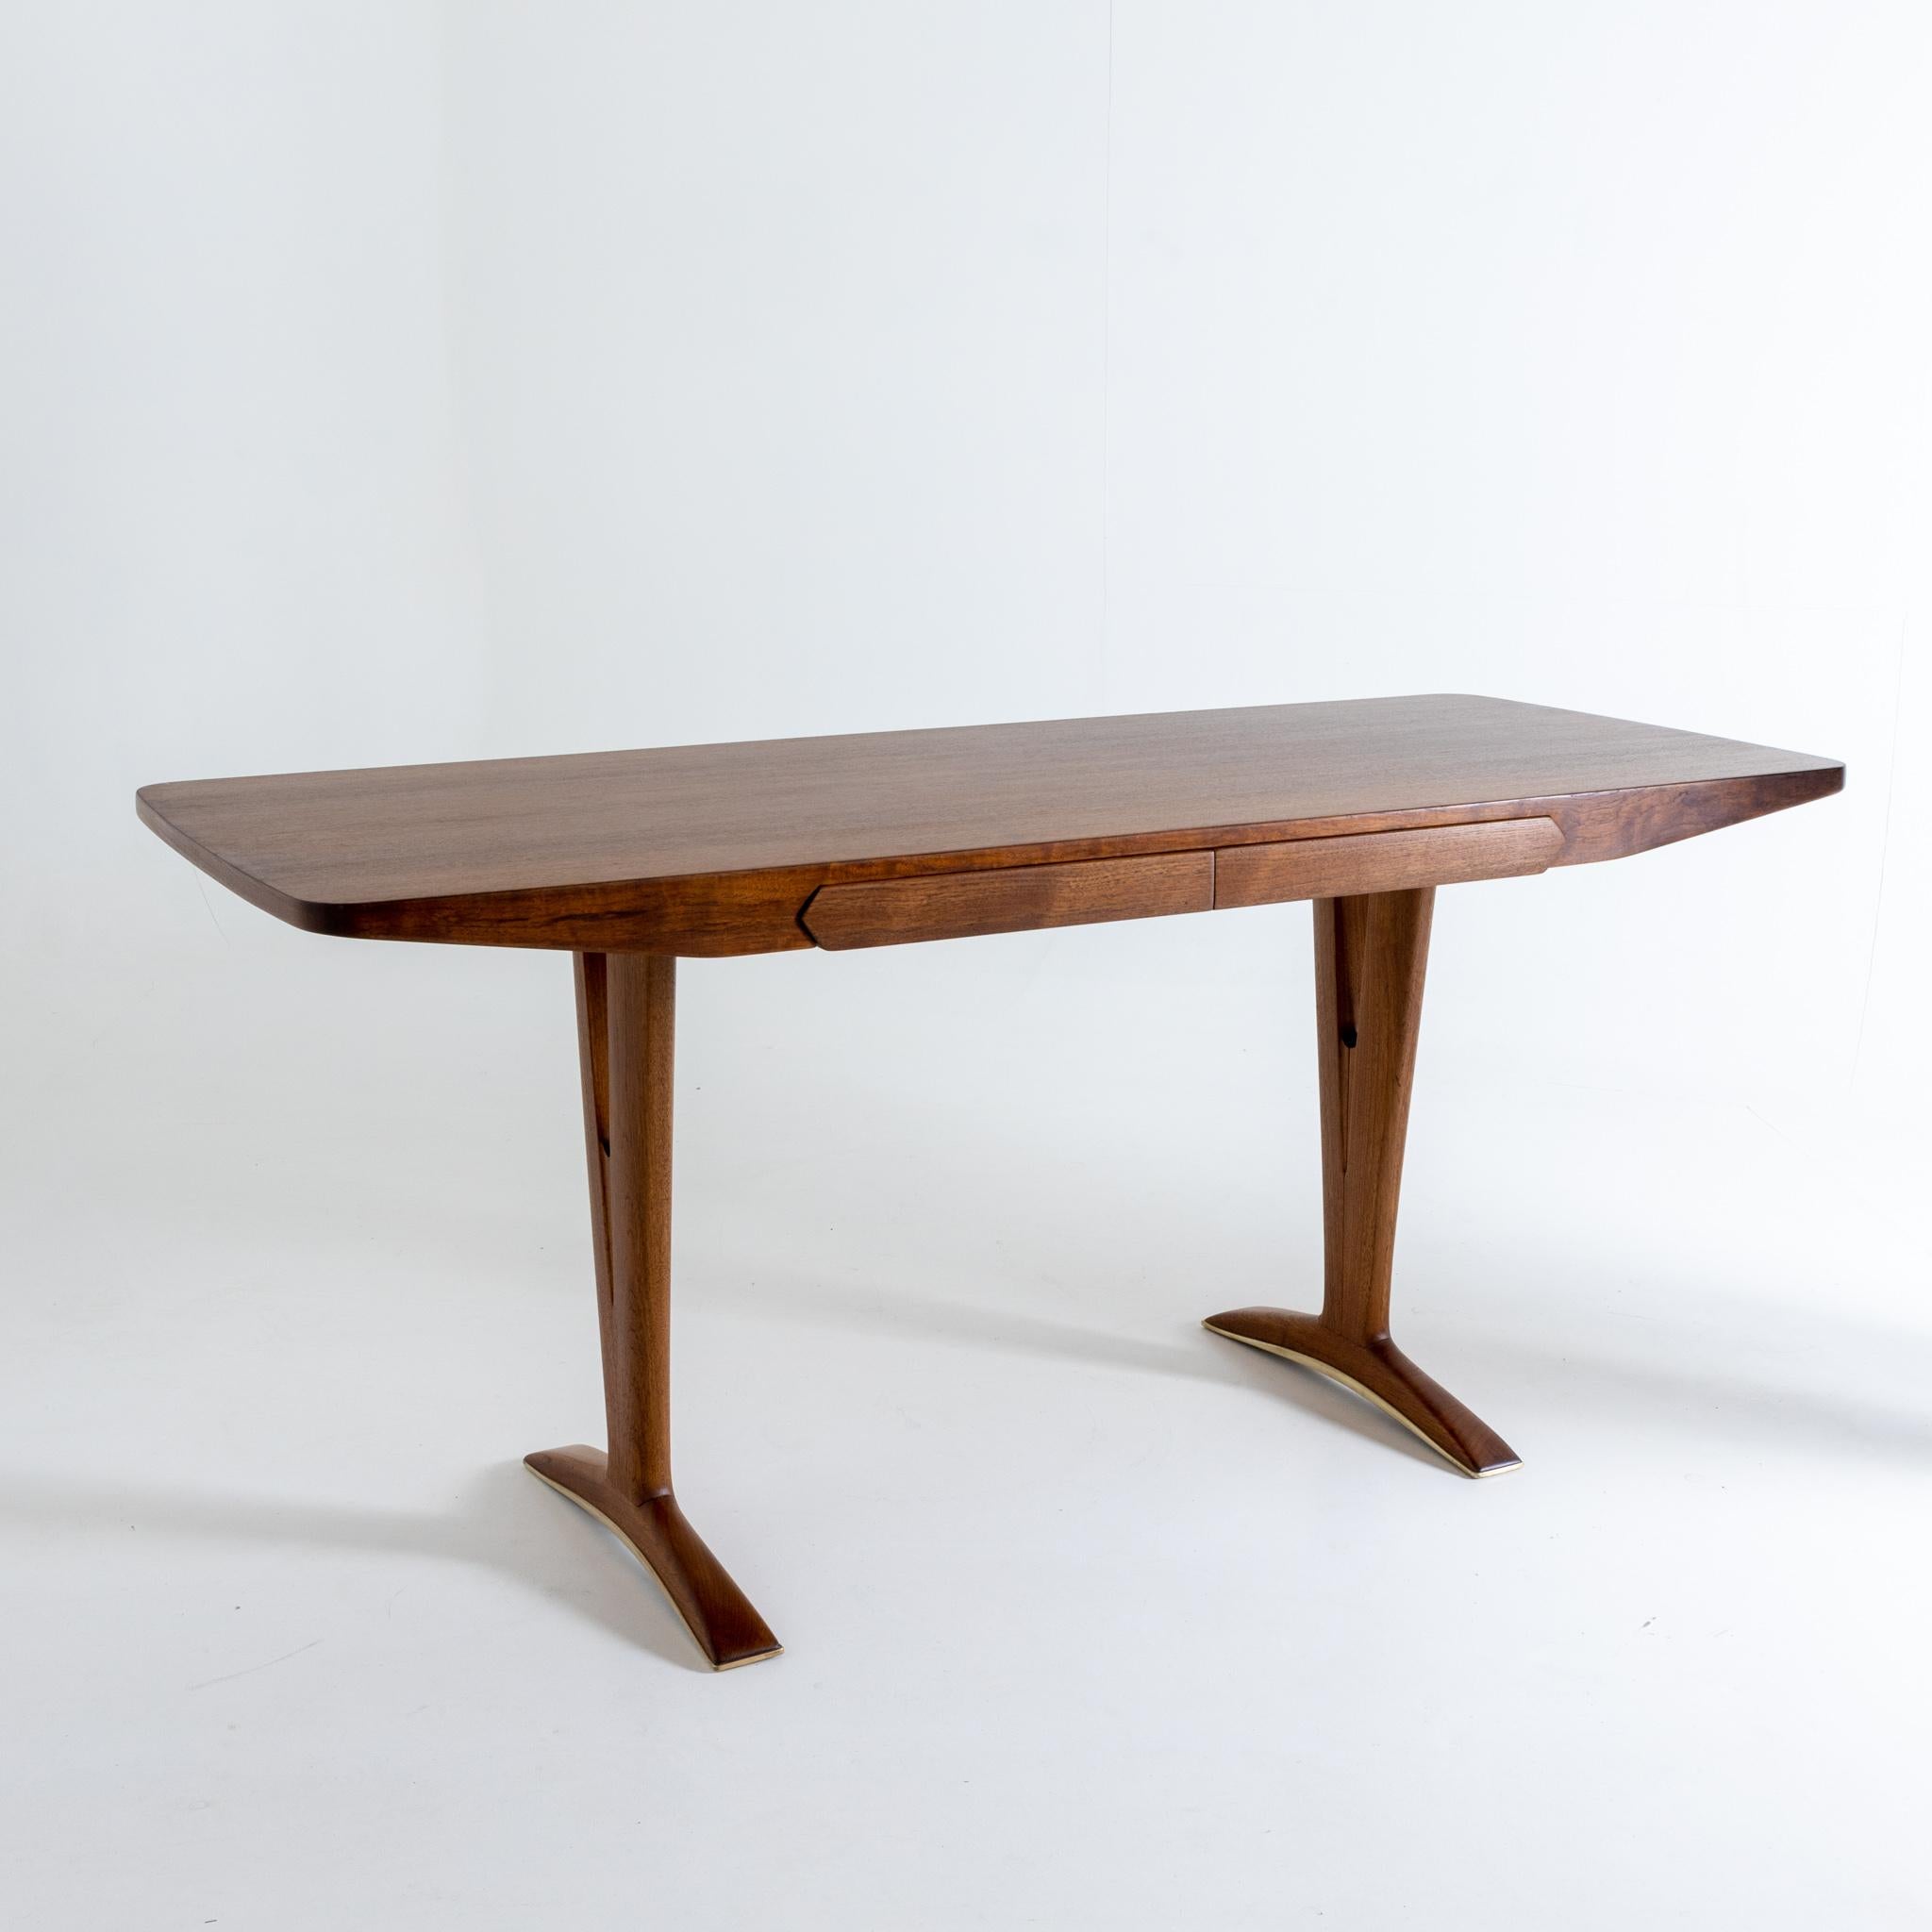 Modernist Writing Table by Osvaldo Borsani 1